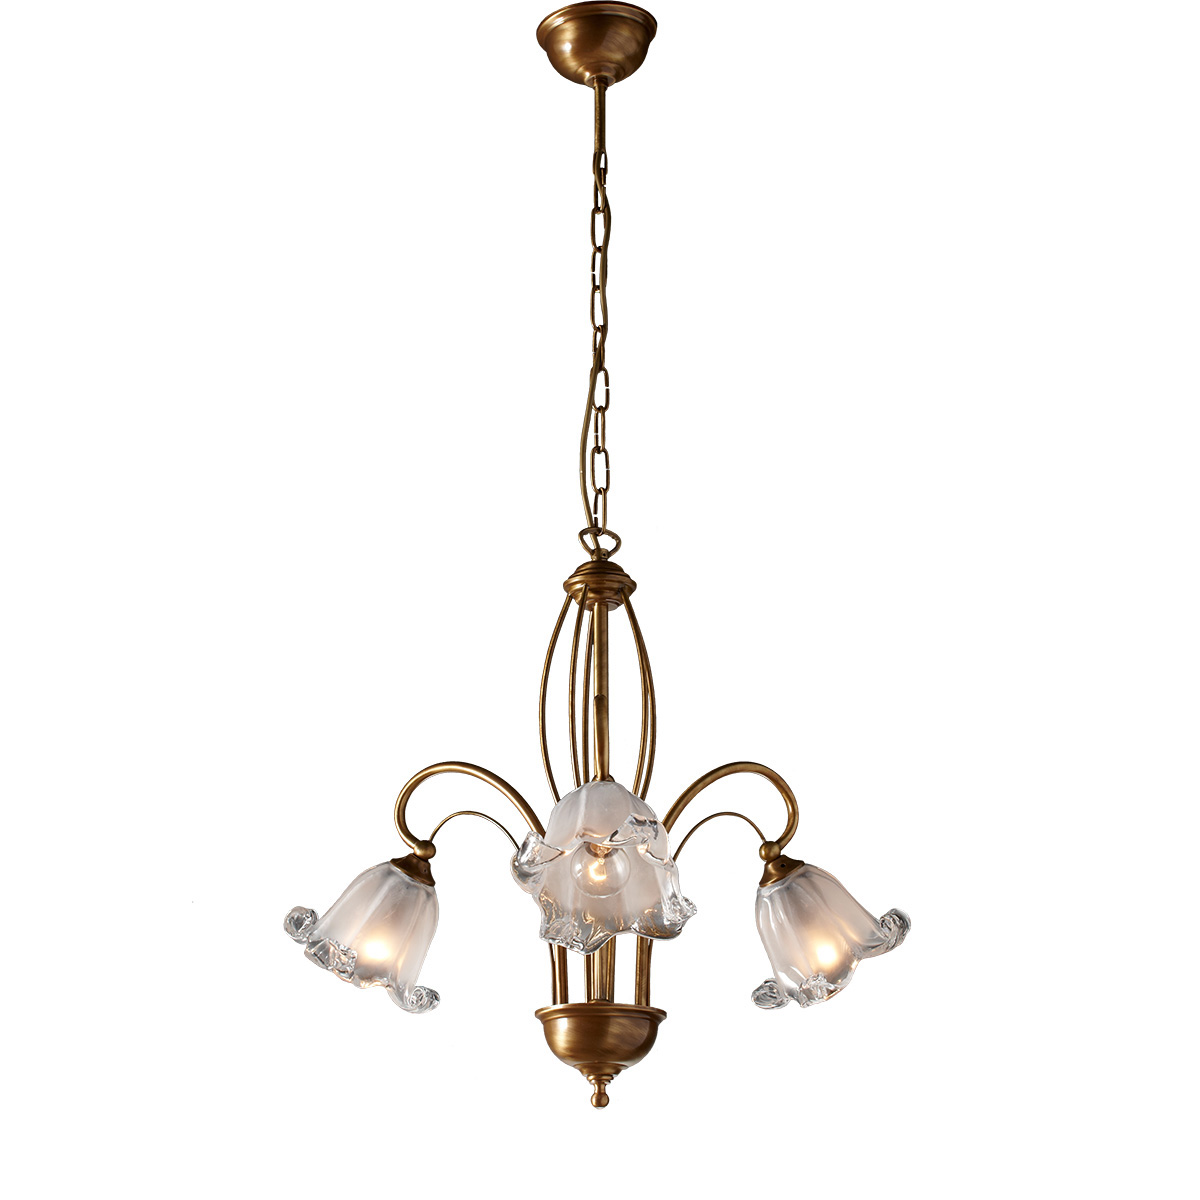 Κλασικό φωτιστικό με κρύσταλλα Murano ΝΥΜΦΑΙΟ classic chandelier with Murano crystals